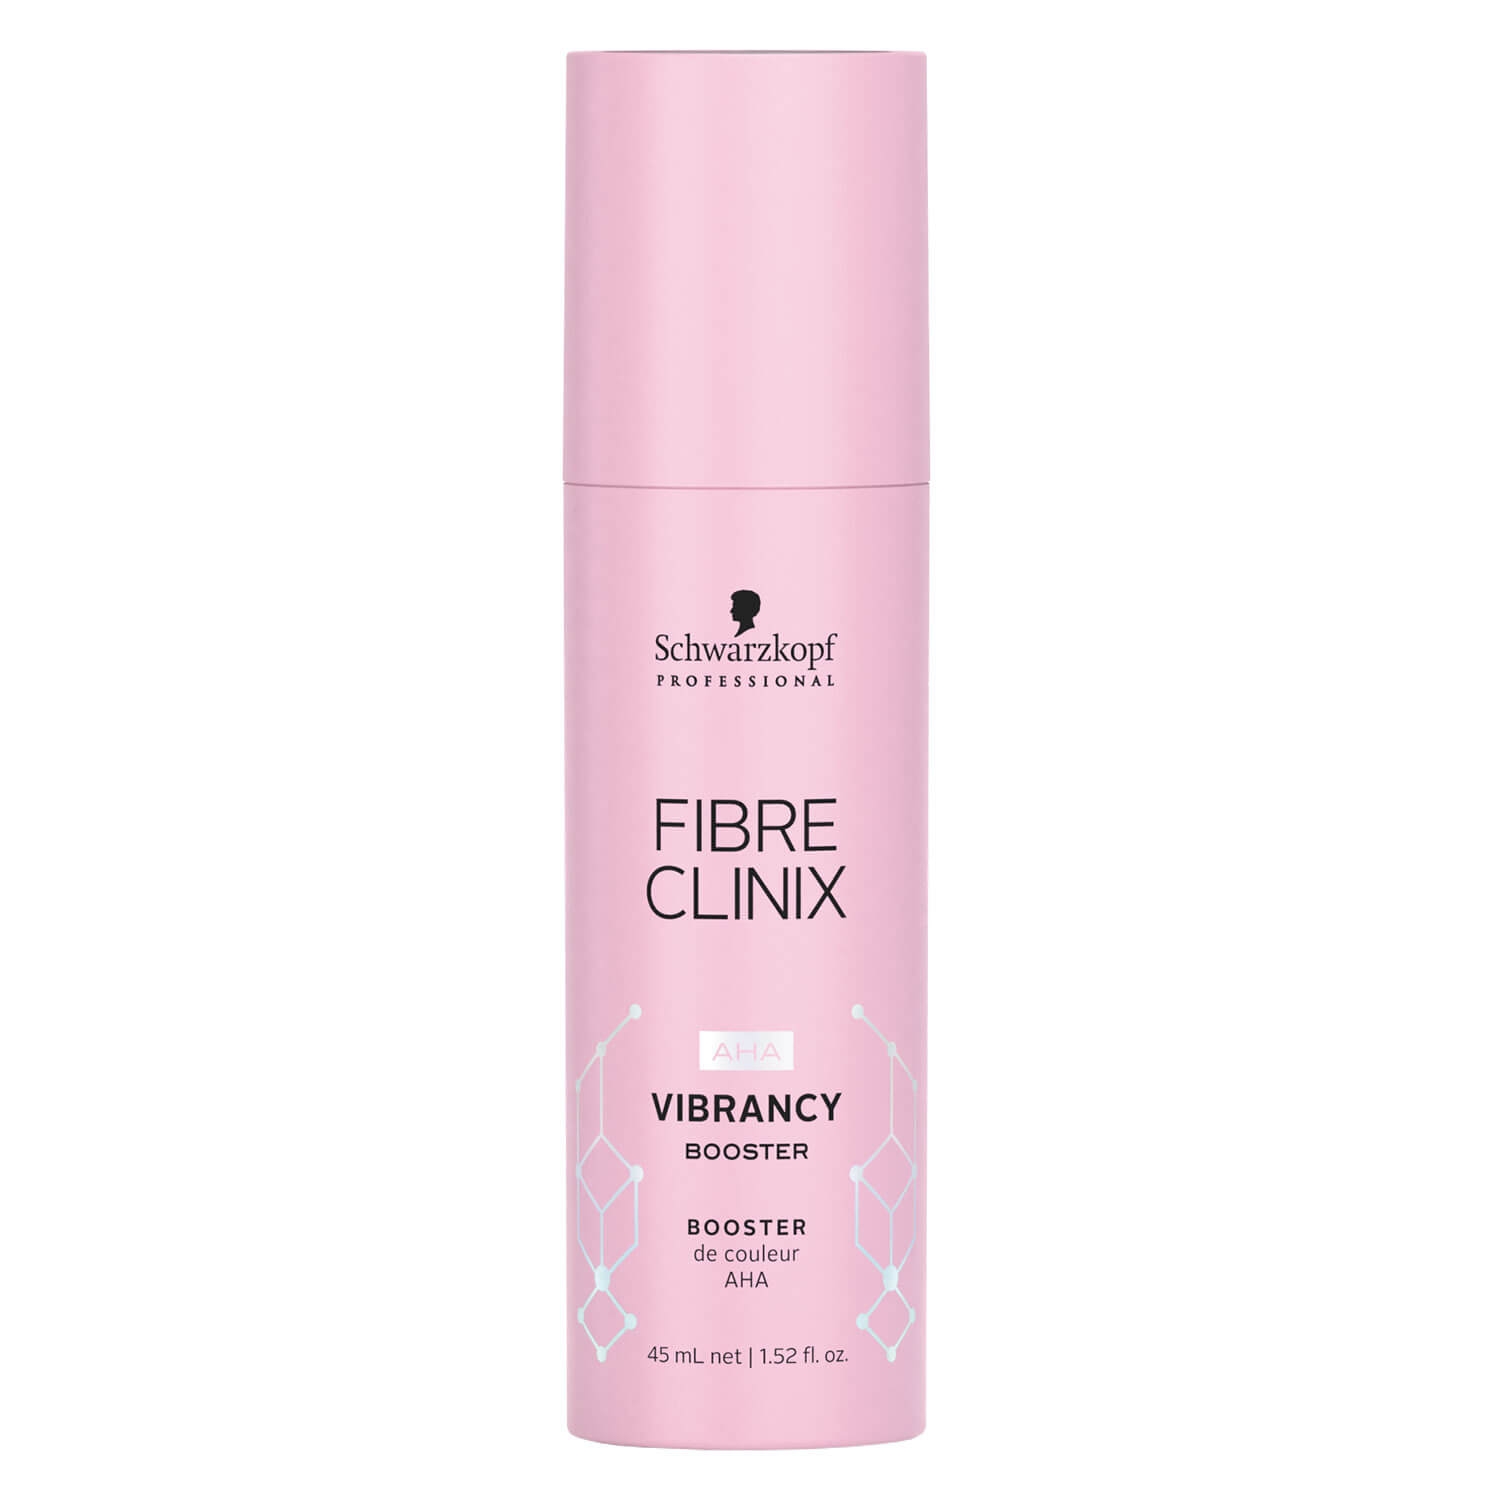 Produktbild von Fibre Clinix - Vibrancy Booster Salon Treatment